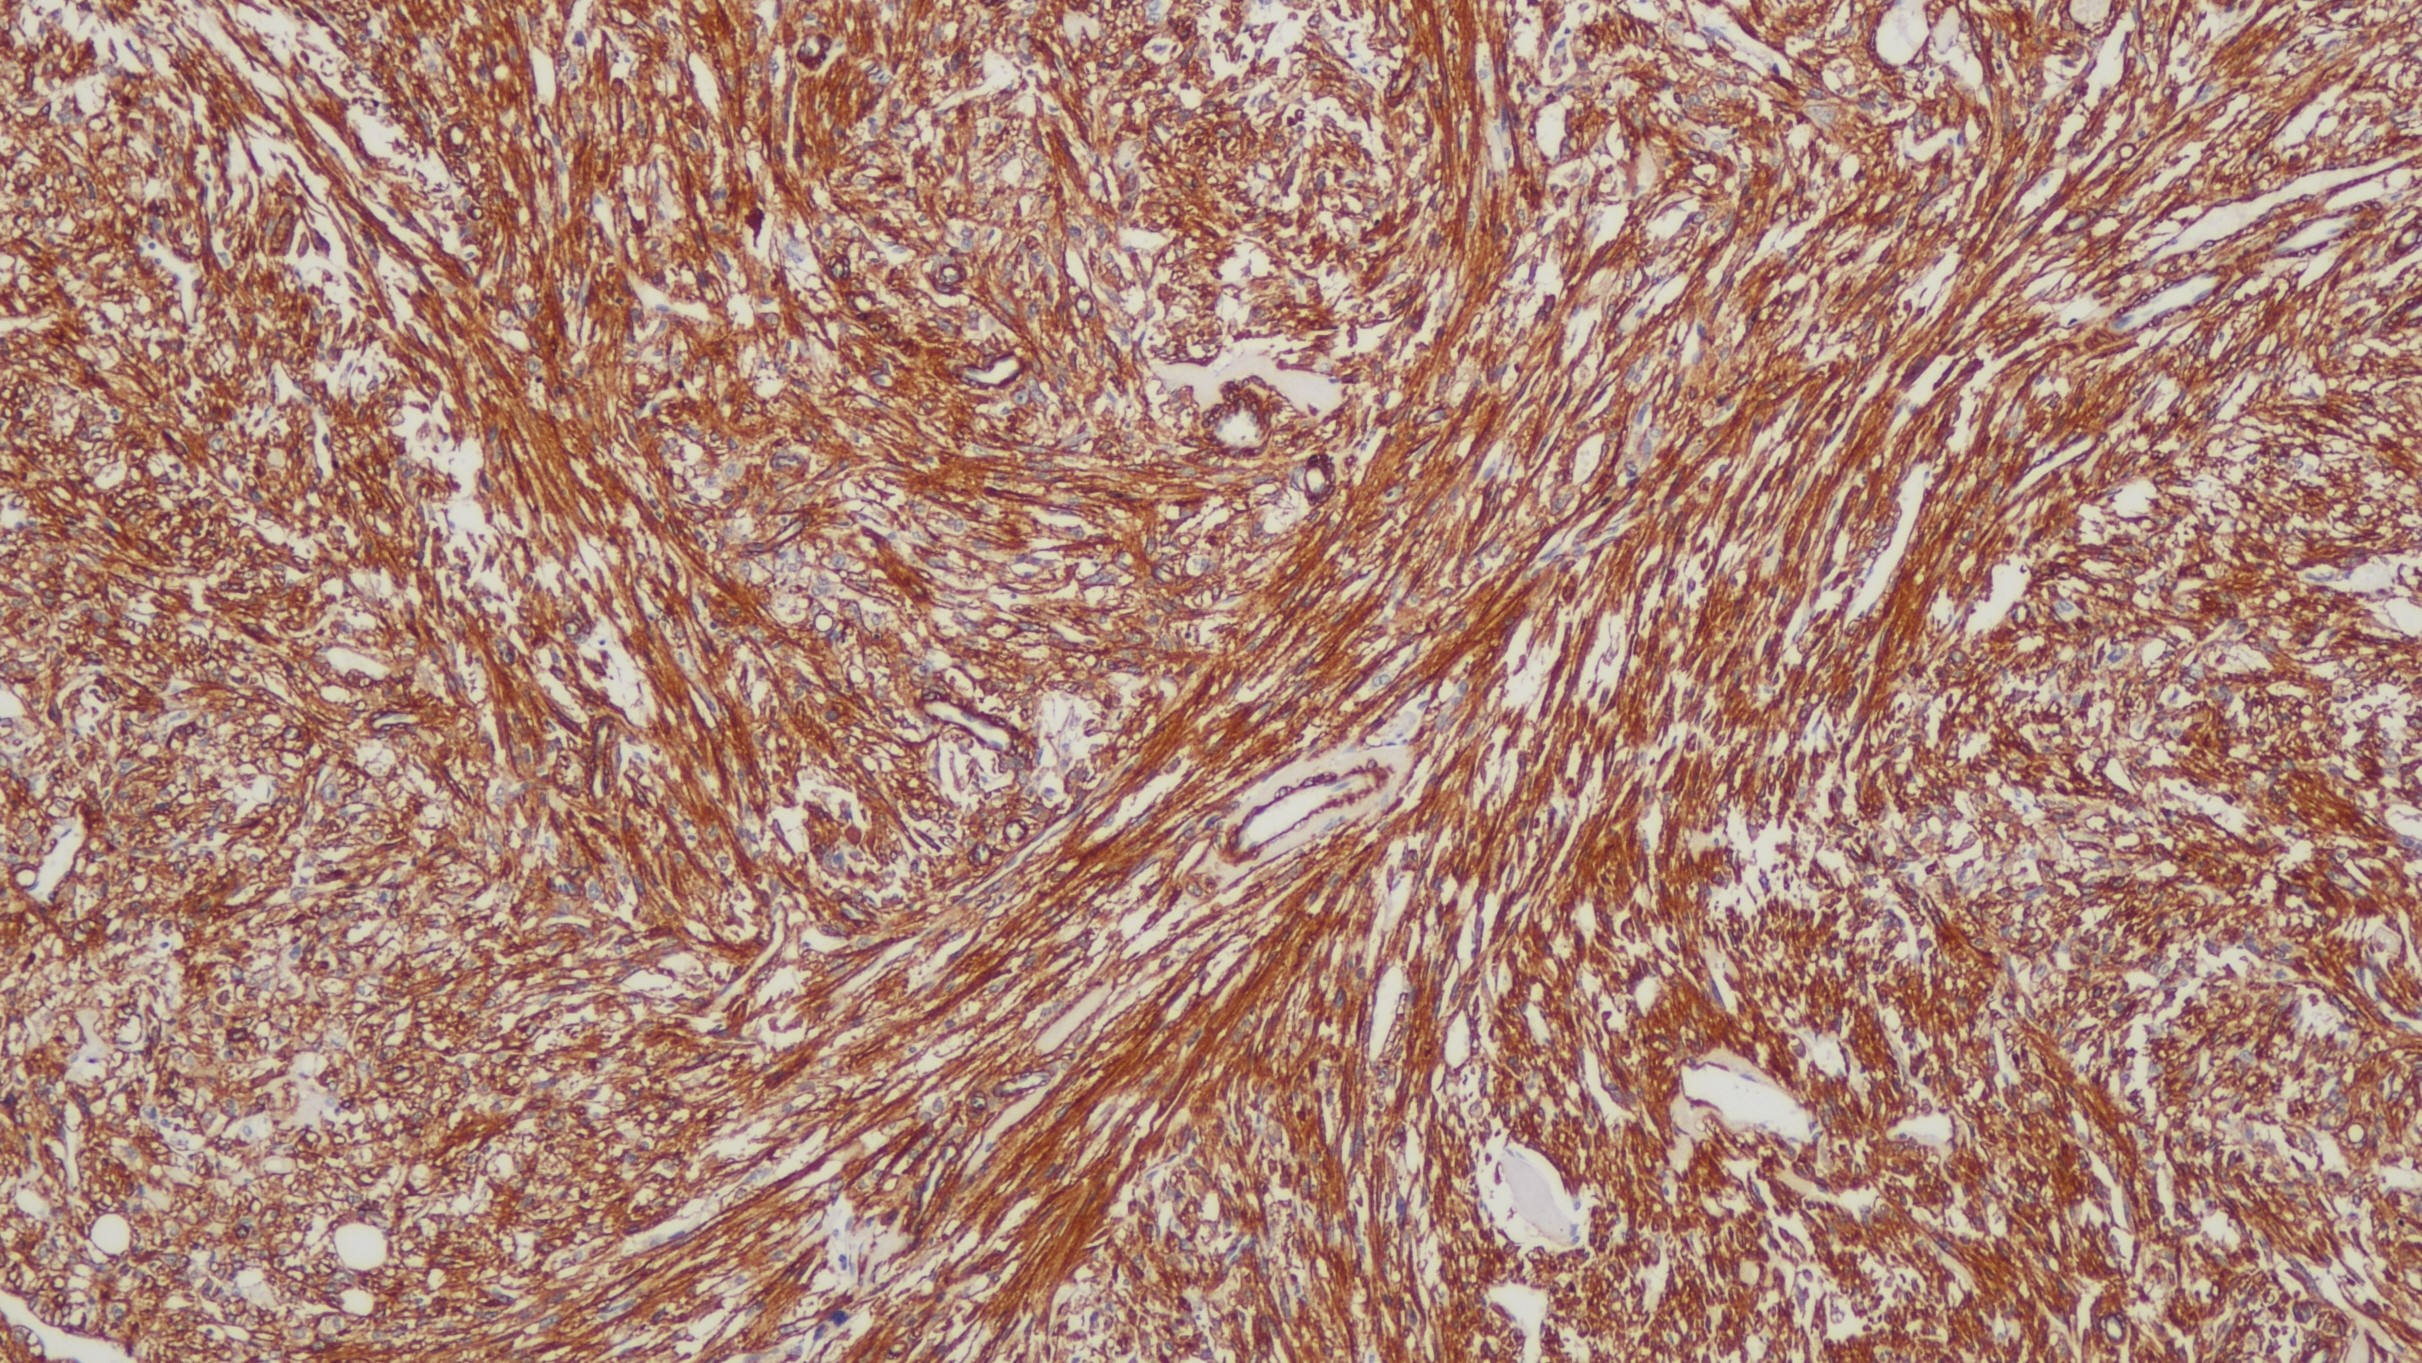 血管平滑肌瘤SMA(1A4)染色